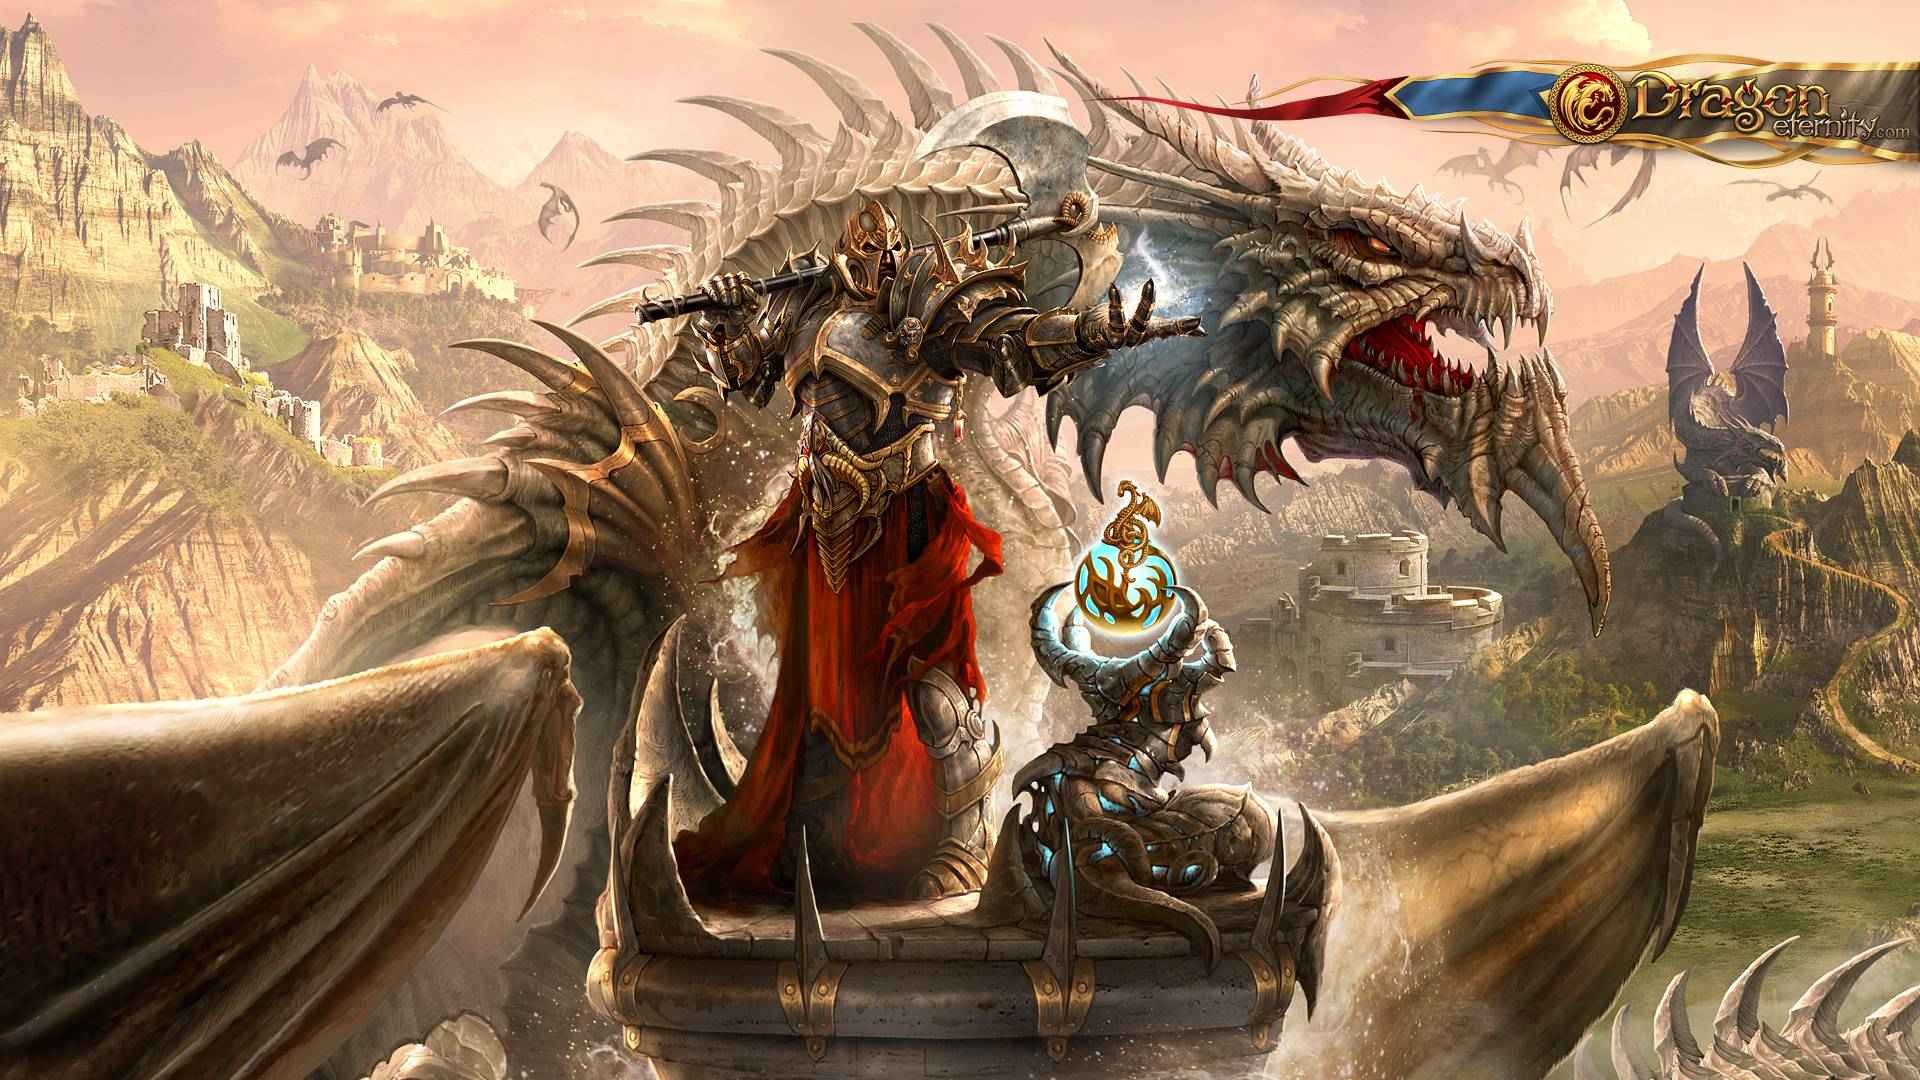 dragon rider wallpaper